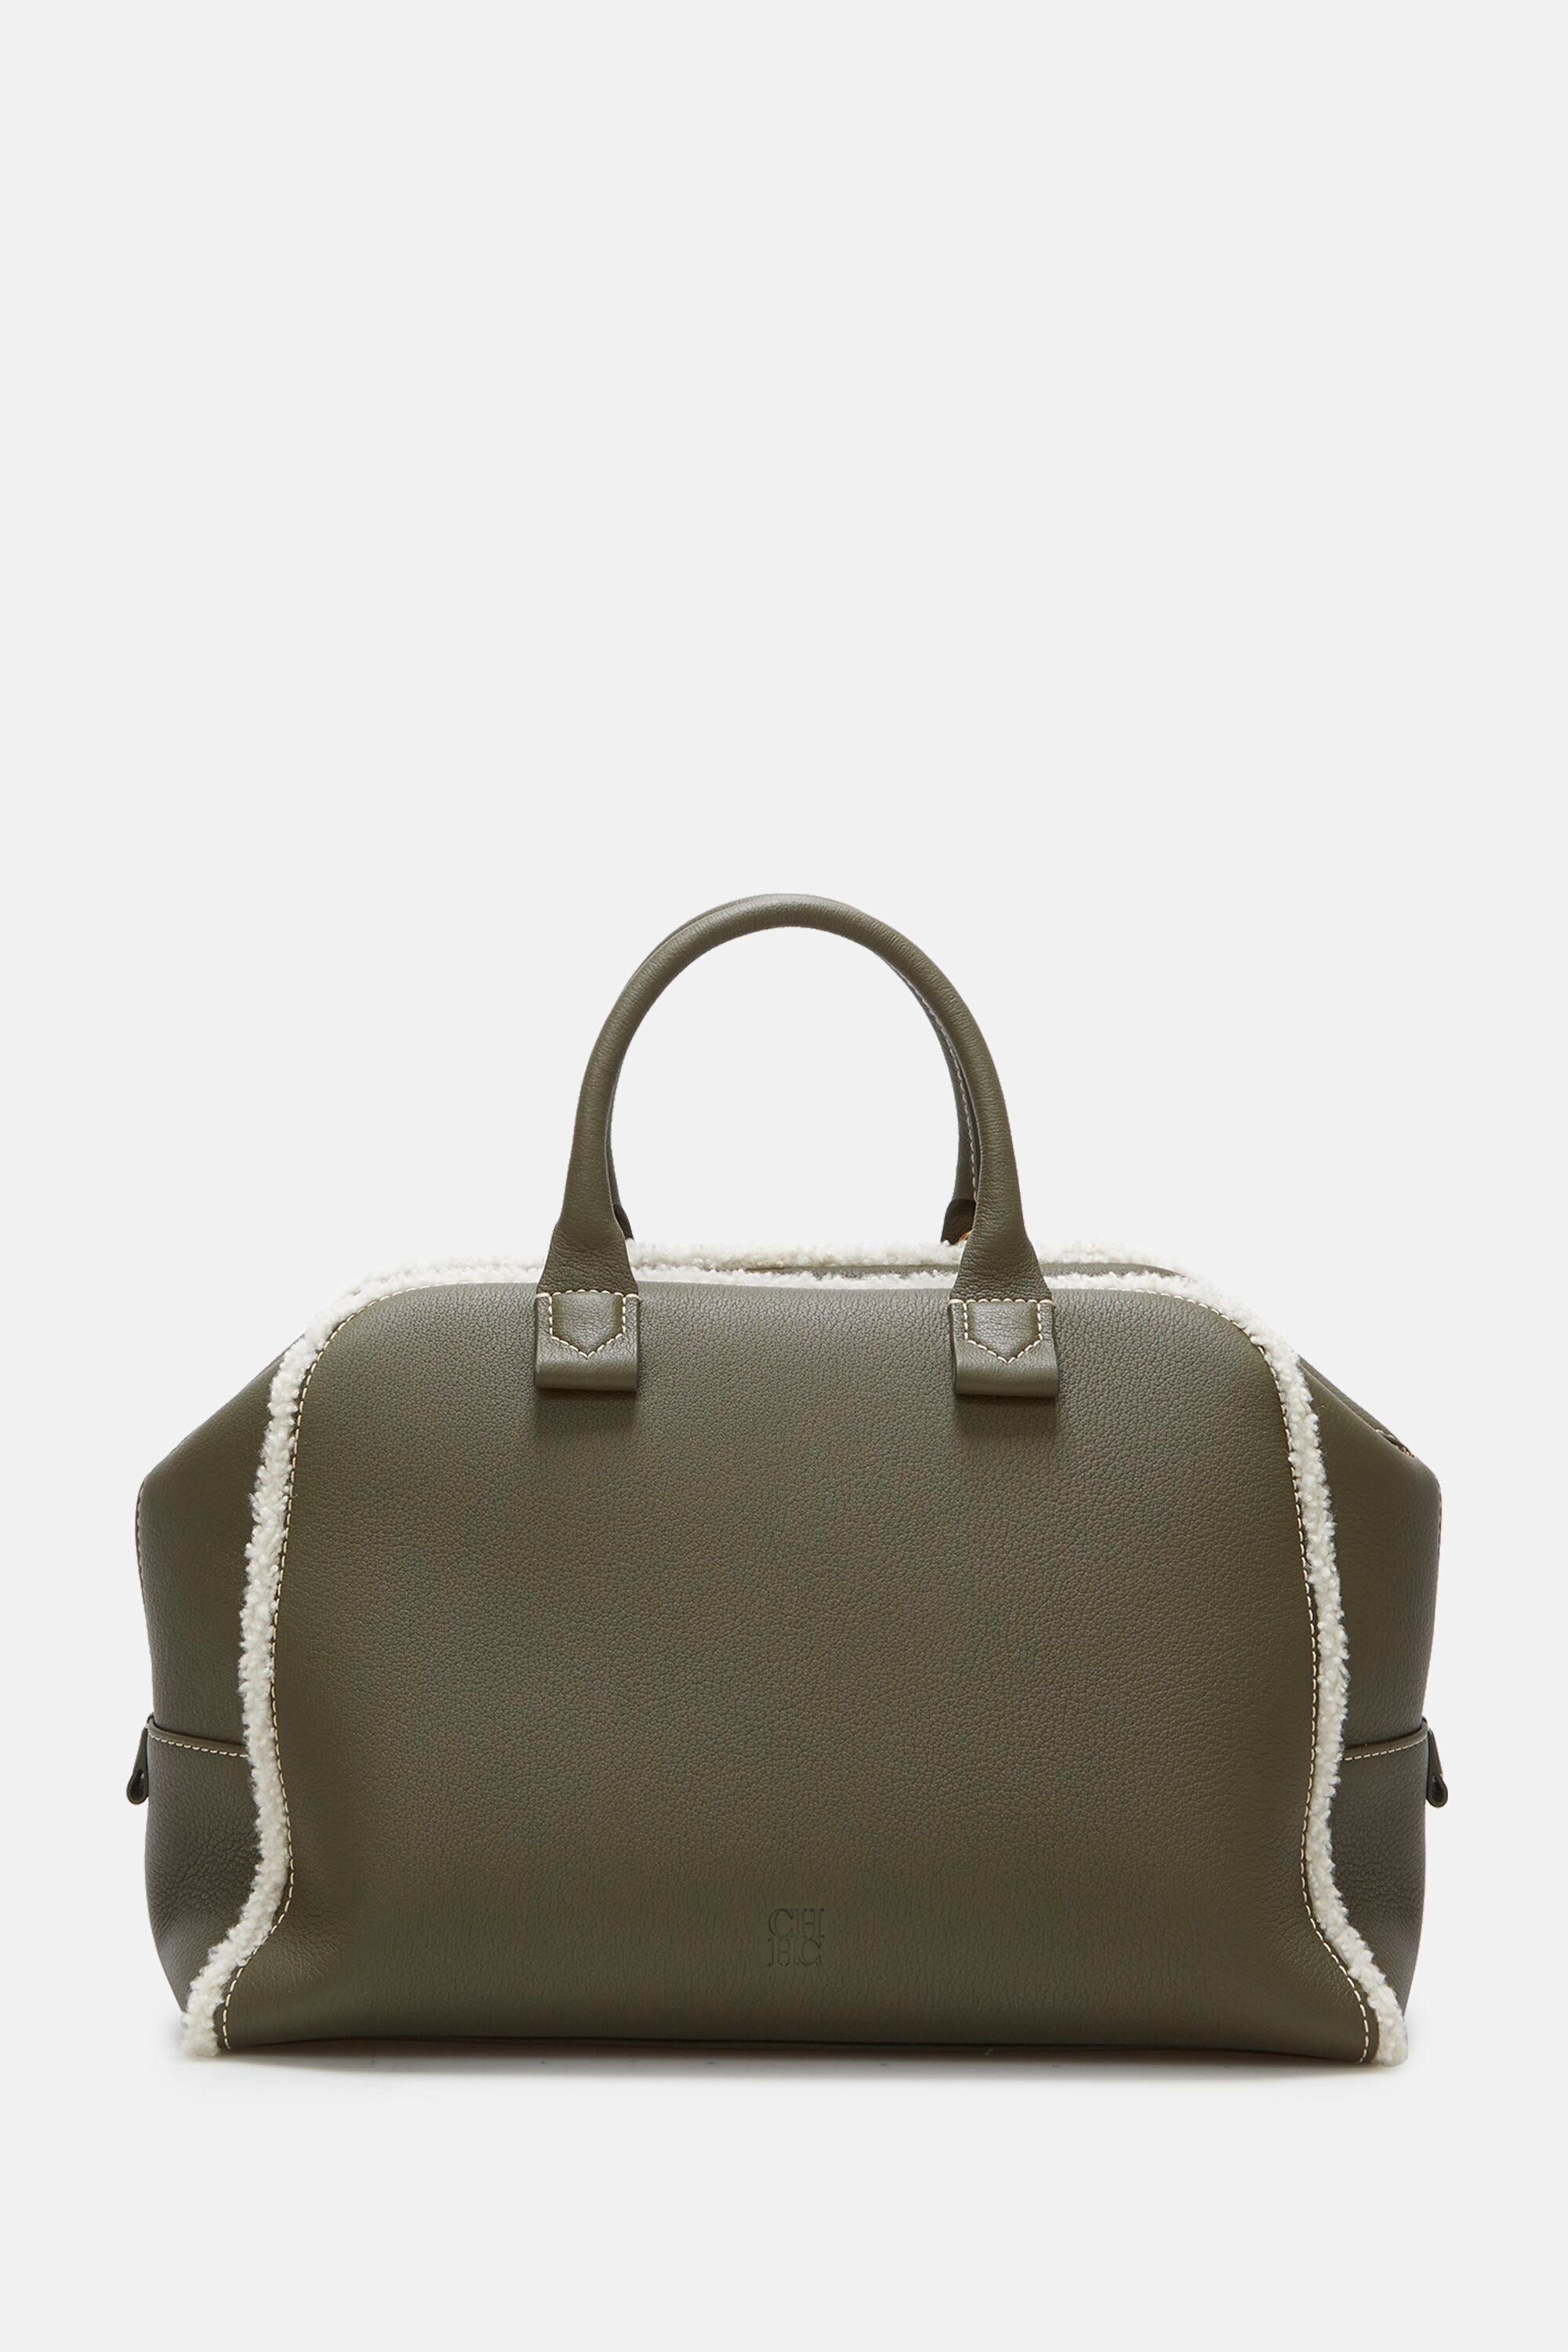 Blasón M | Medium handbag khaki - CH Carolina Herrera United States